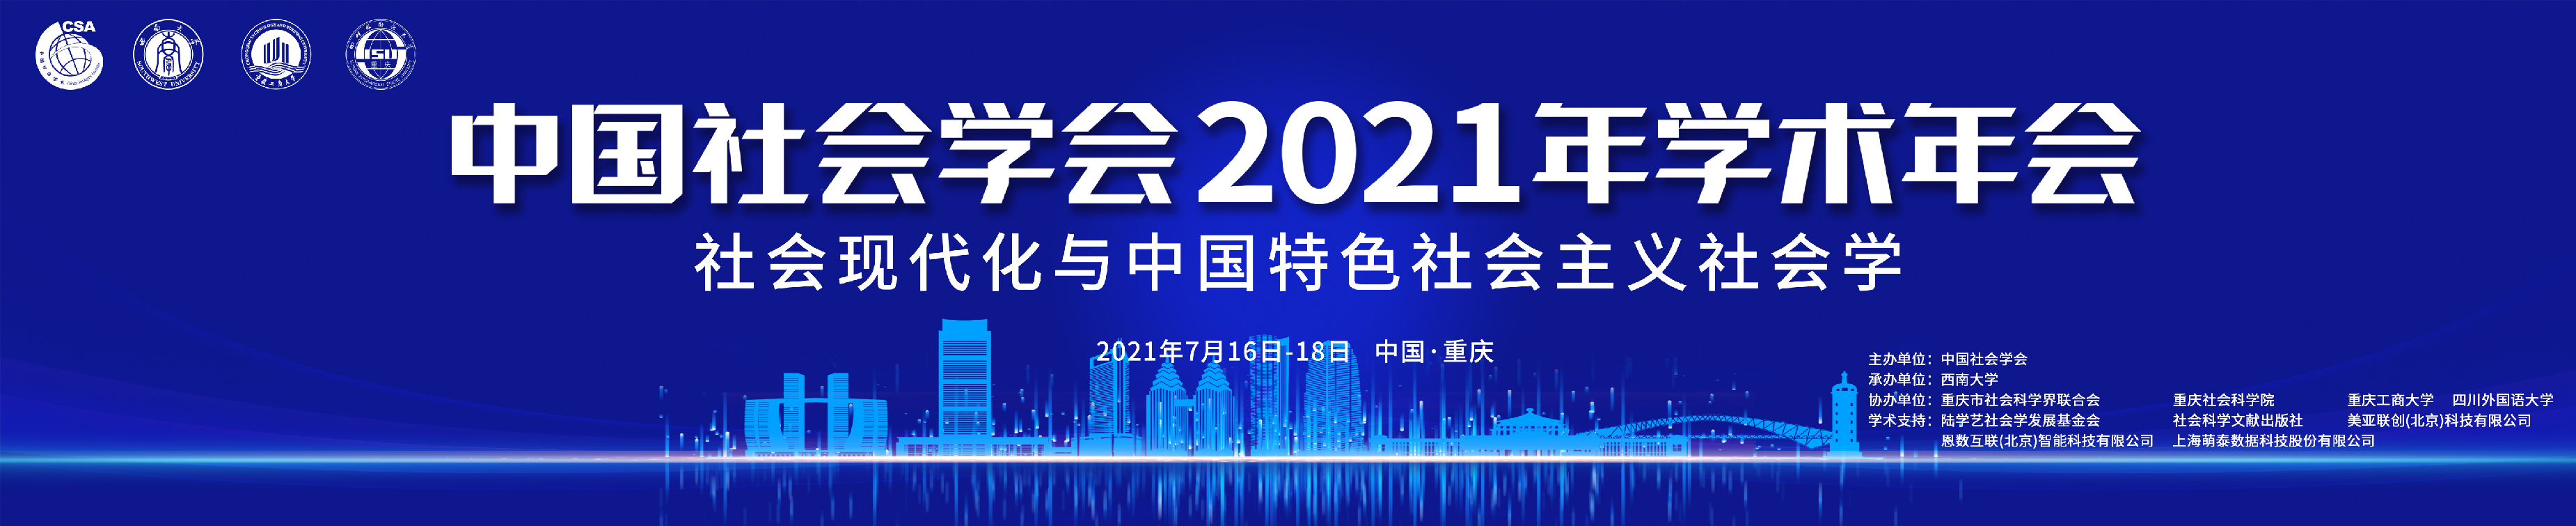 中国社会学会2021年学术年会